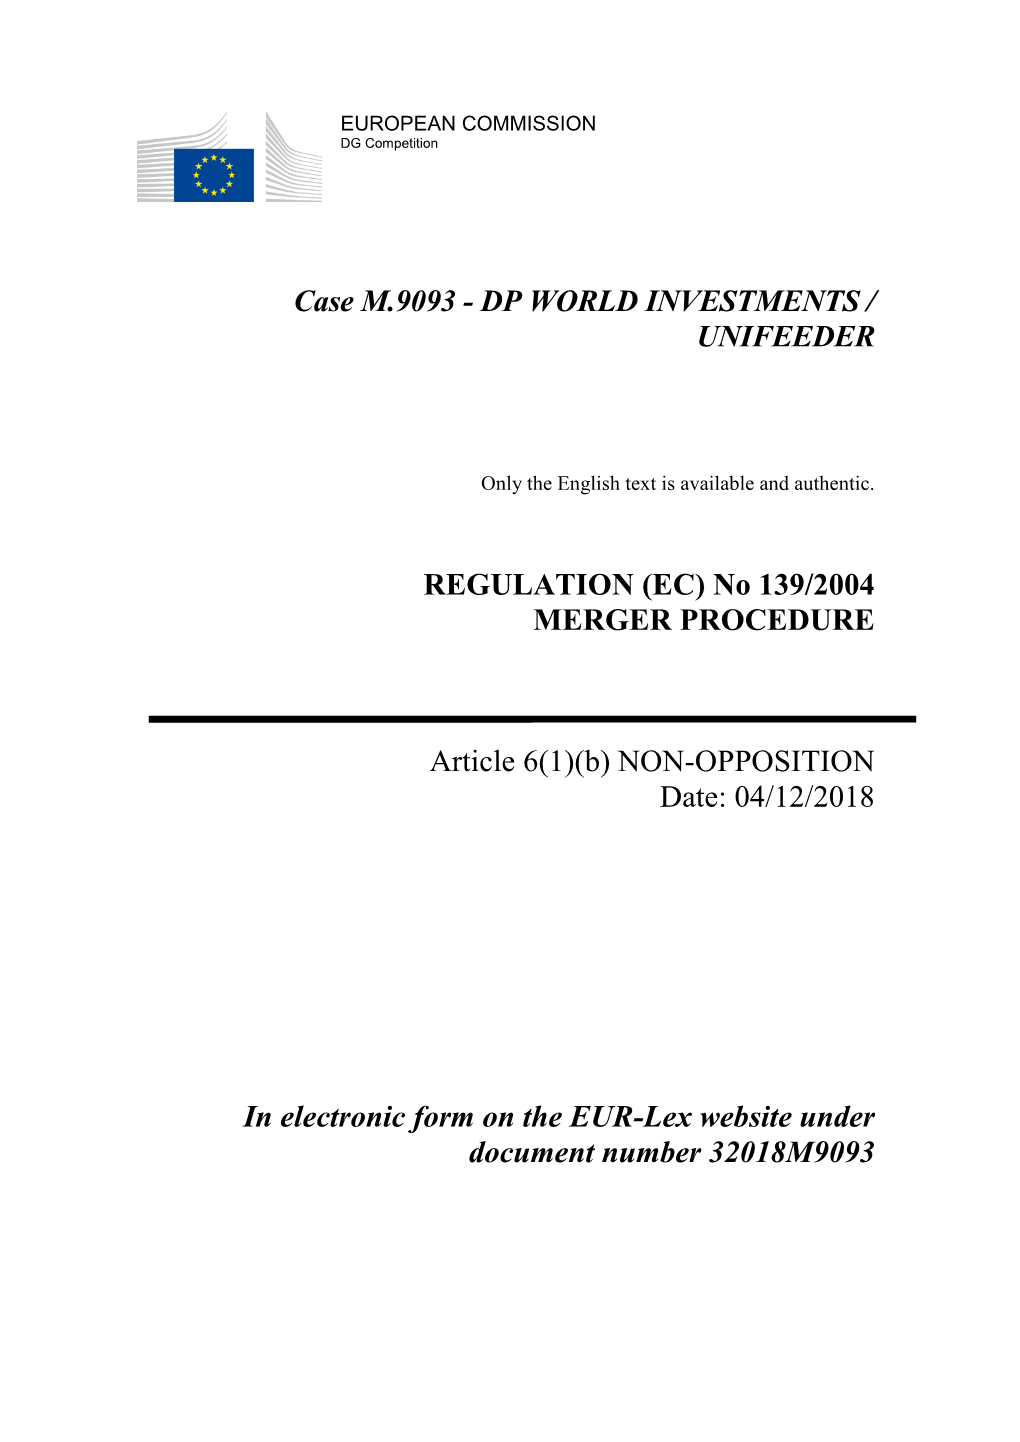 Case M.9093 - DP WORLD INVESTMENTS / UNIFEEDER